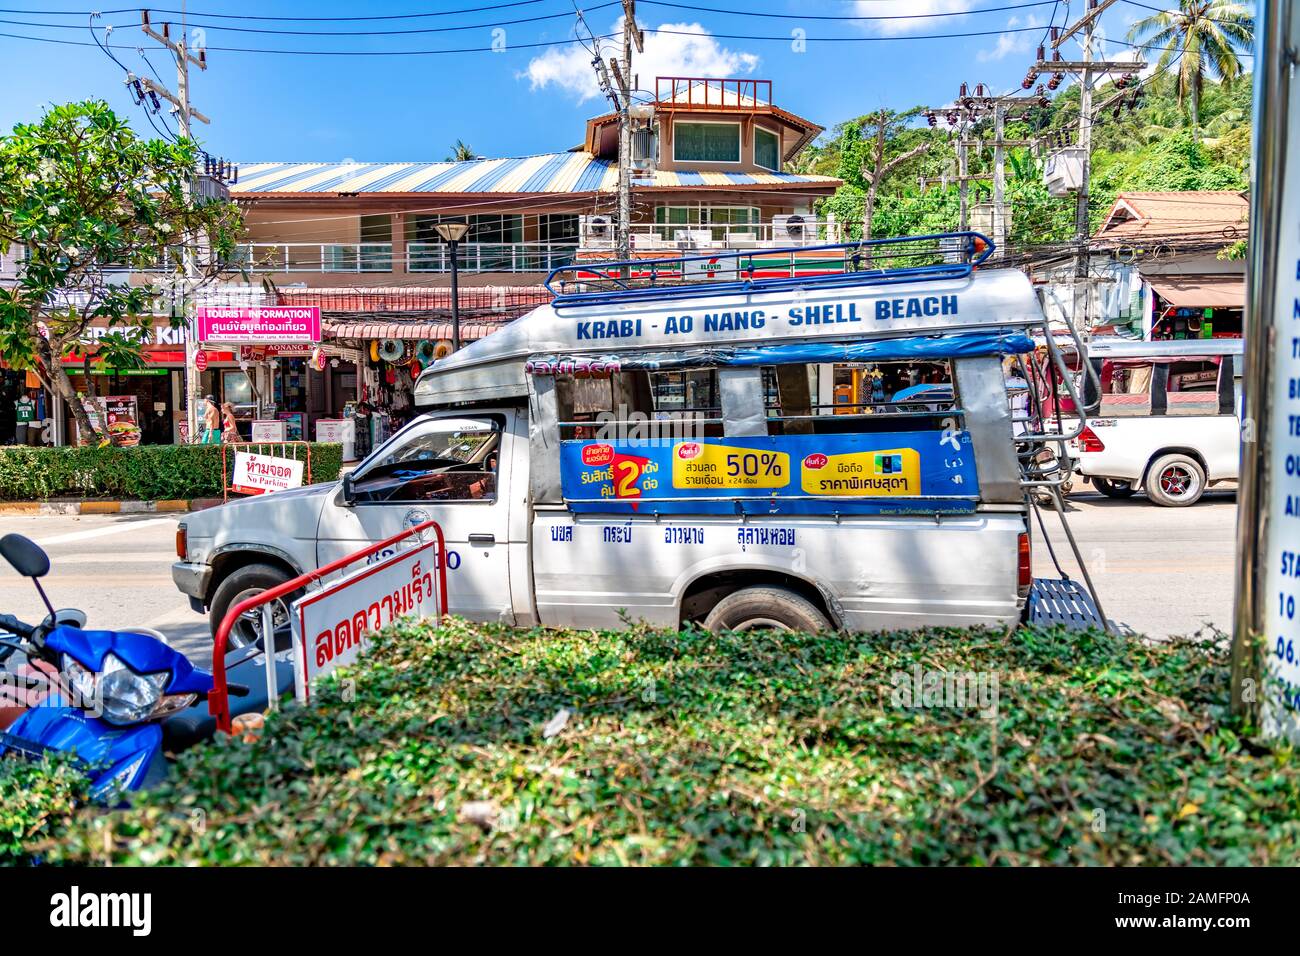 La ville de Krabi, Thaïlande - 24 novembre 2019 : une camionnette  transformée en local de bus dans